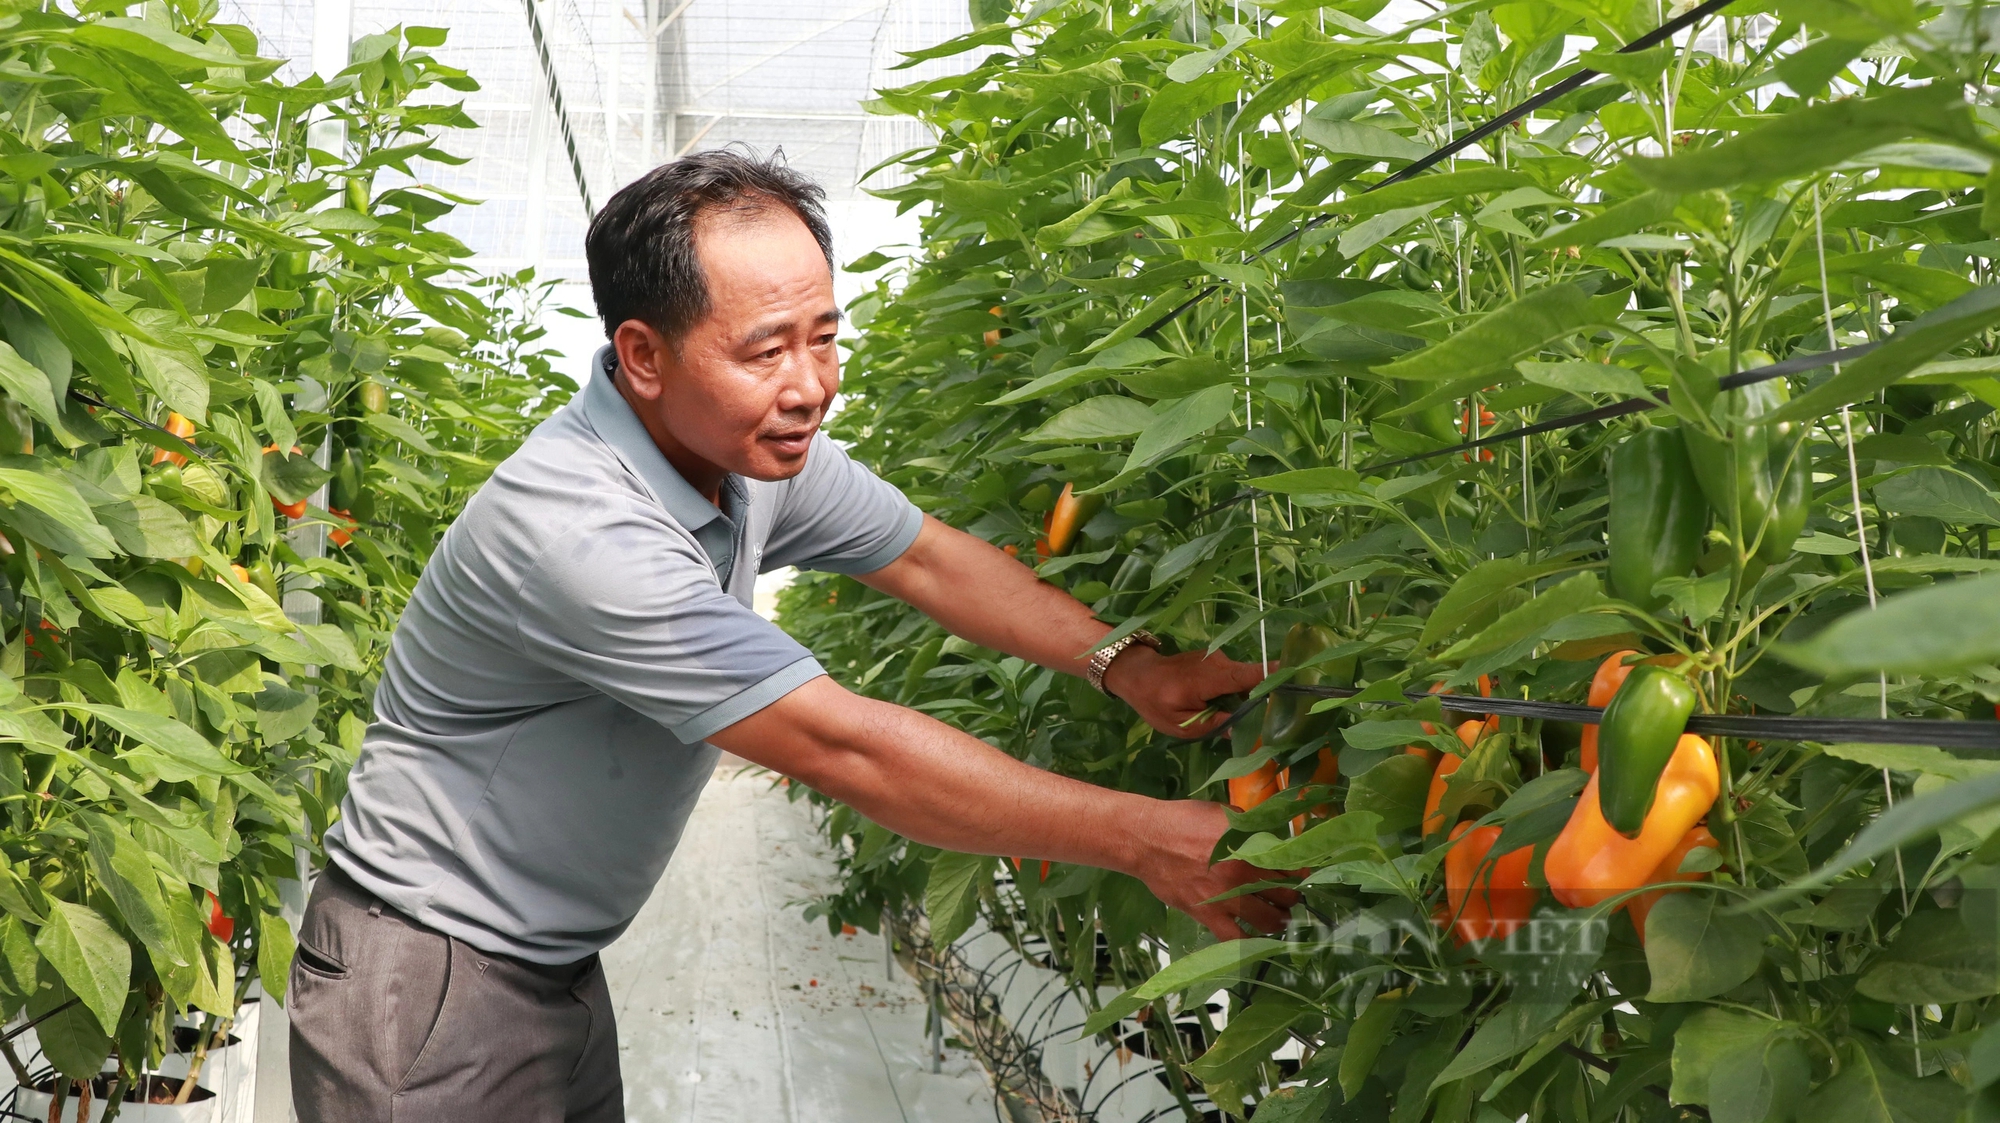 Trồng ớt tiêu chuẩn toàn cầu ở Lâm Đồng kiểu gì mà vườn tốt um, nông dân thu hàng trăm triệu?- Ảnh 1.